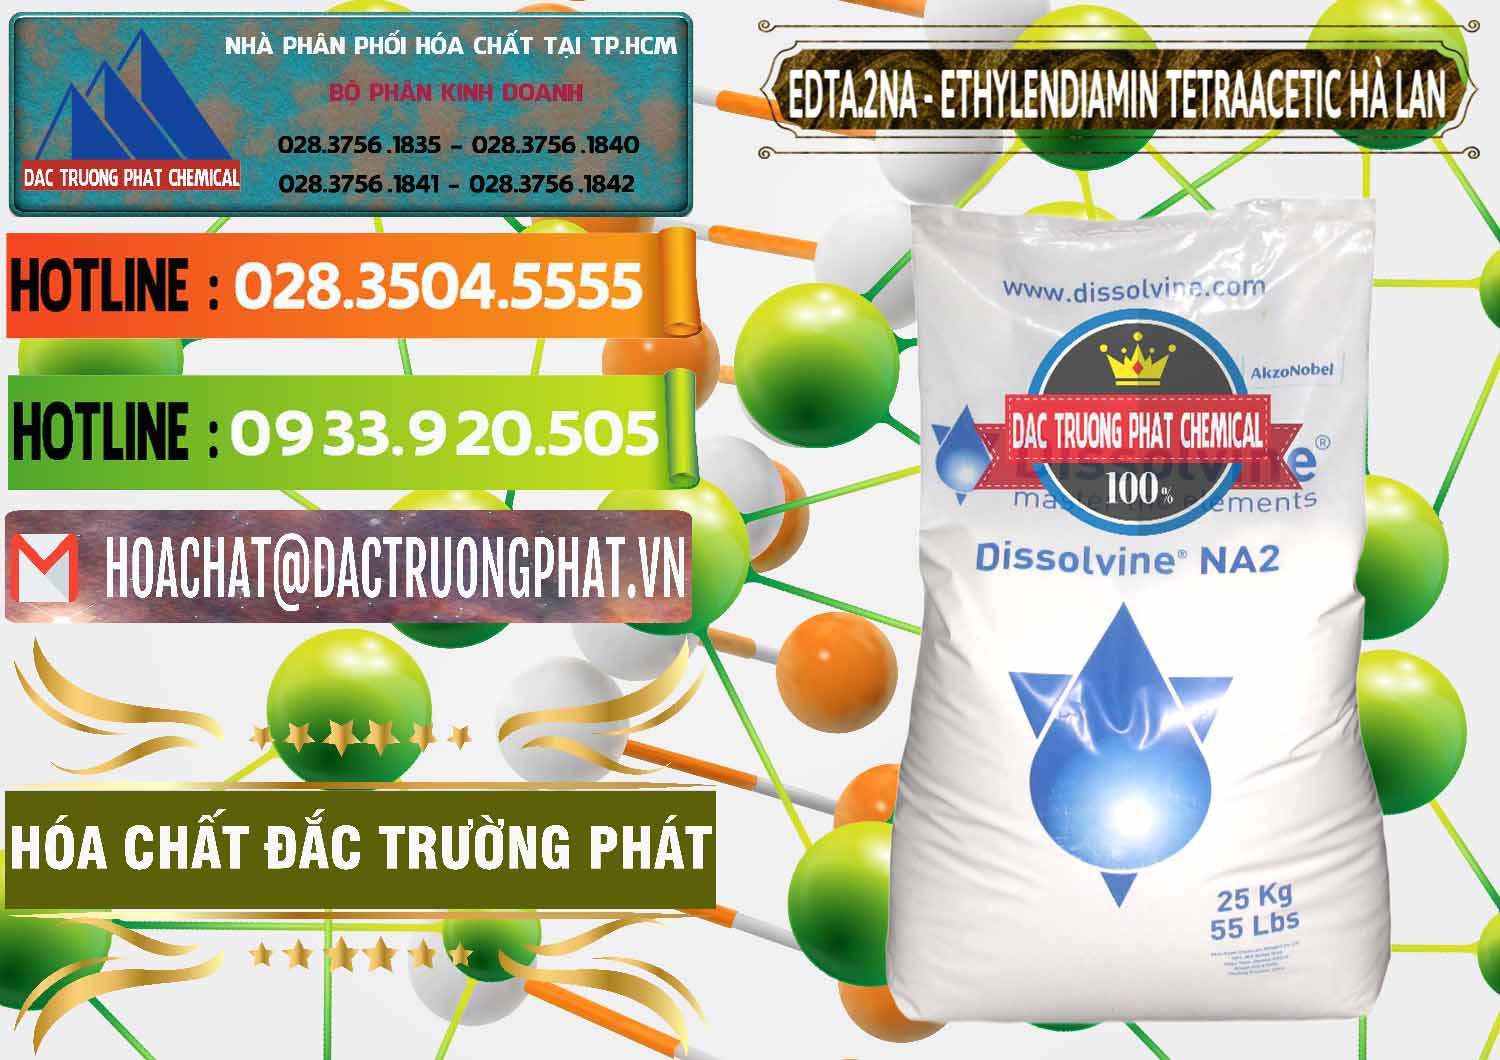 Nơi chuyên phân phối và bán EDTA.2NA - Ethylendiamin Tetraacetic Dissolvine Hà Lan Netherlands - 0064 - Cty chuyên phân phối và cung ứng hóa chất tại TP.HCM - cungcaphoachat.com.vn